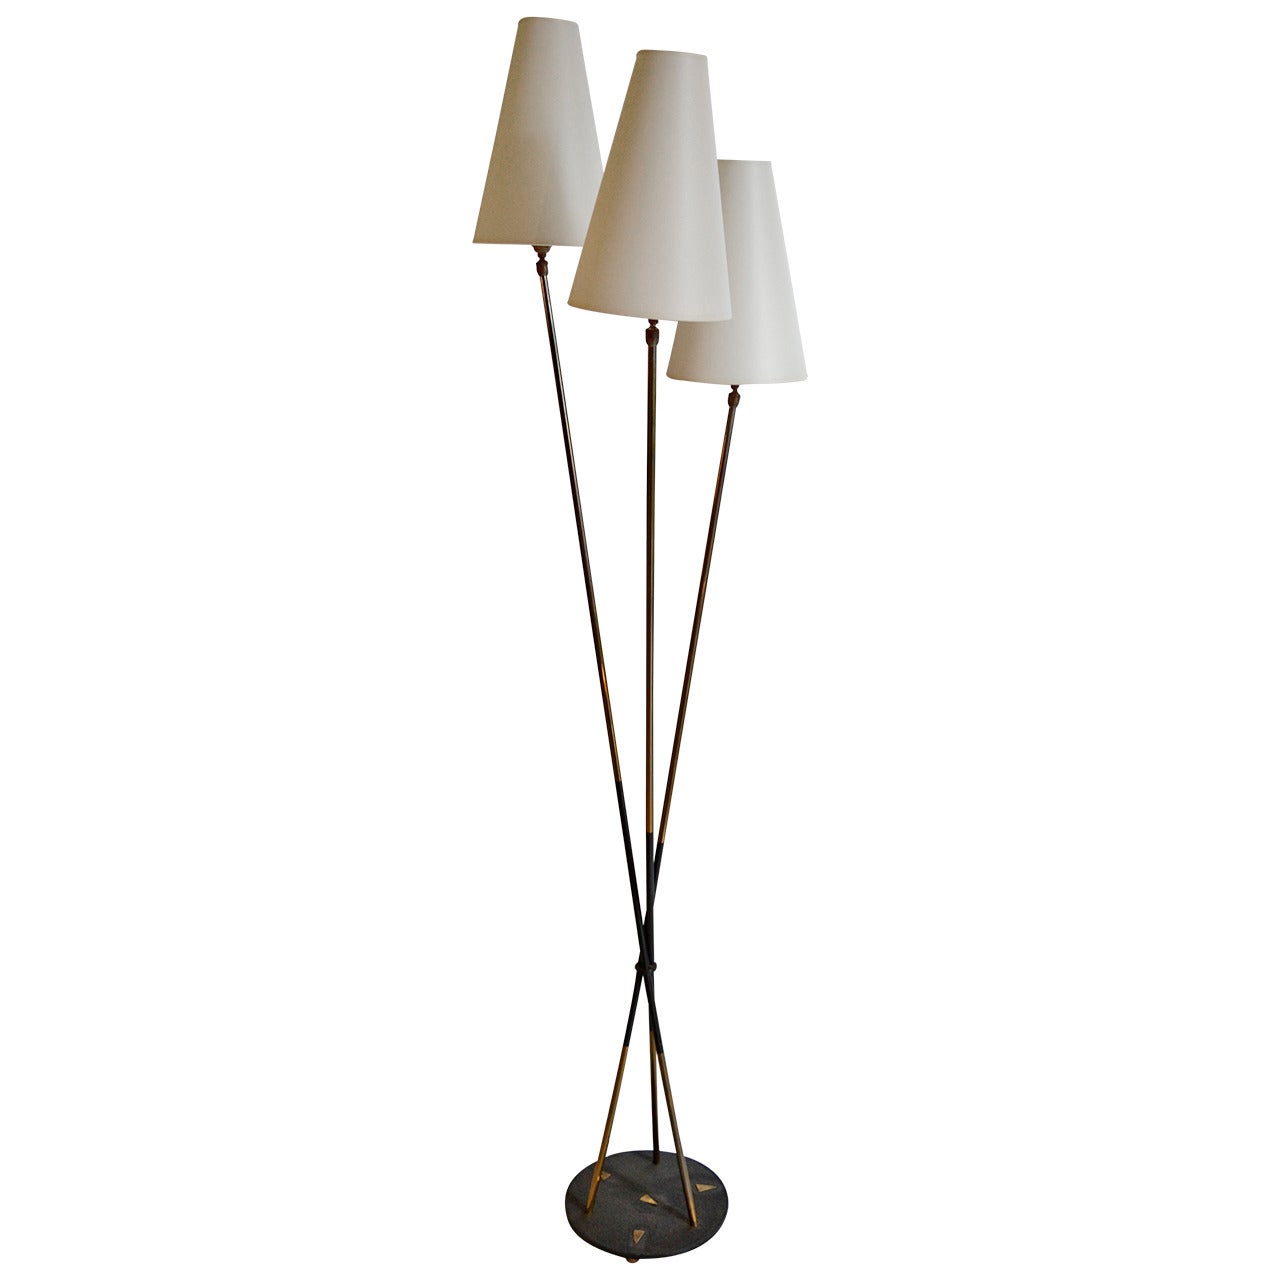 1950s Floor Lamp Designed by Arlus